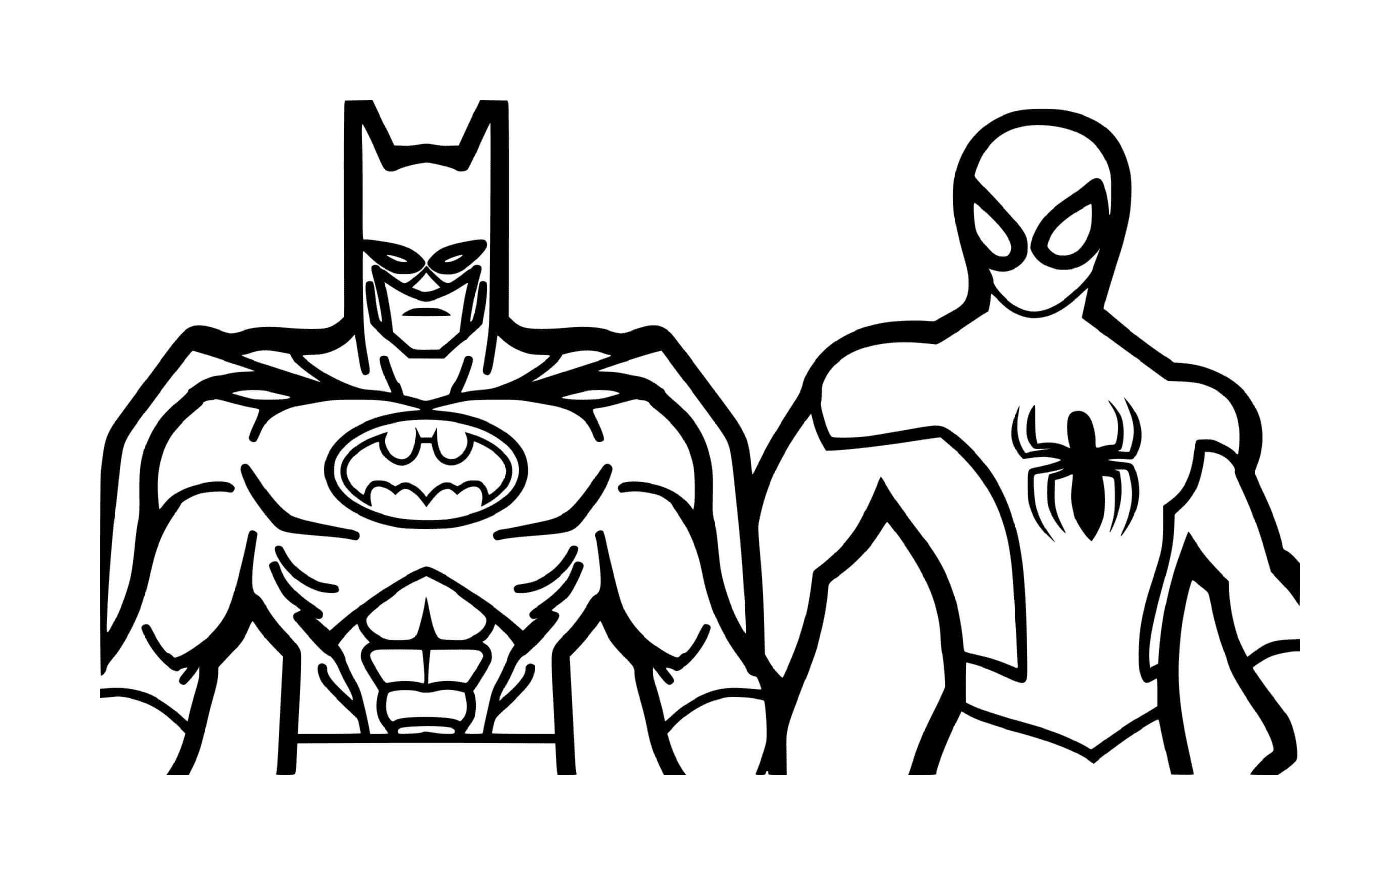  Batman und Spiderman, Superhelden 